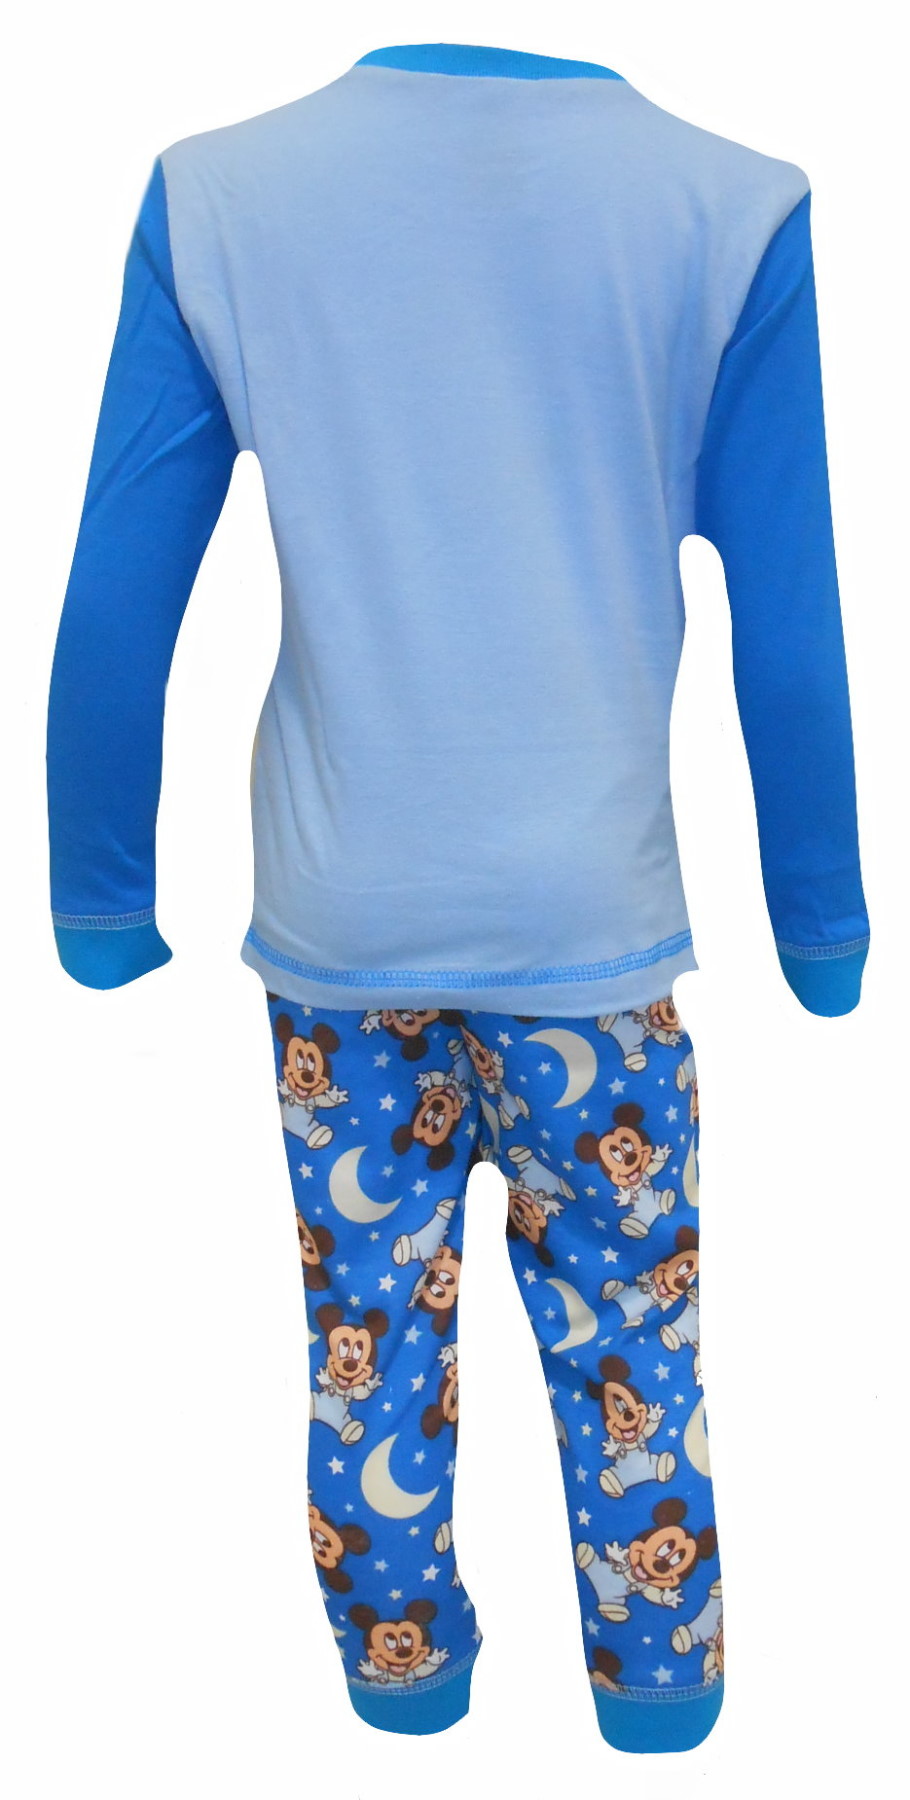 Mickey Mouse Pyjamas PB381 (1).JPG  by Thingimijigs